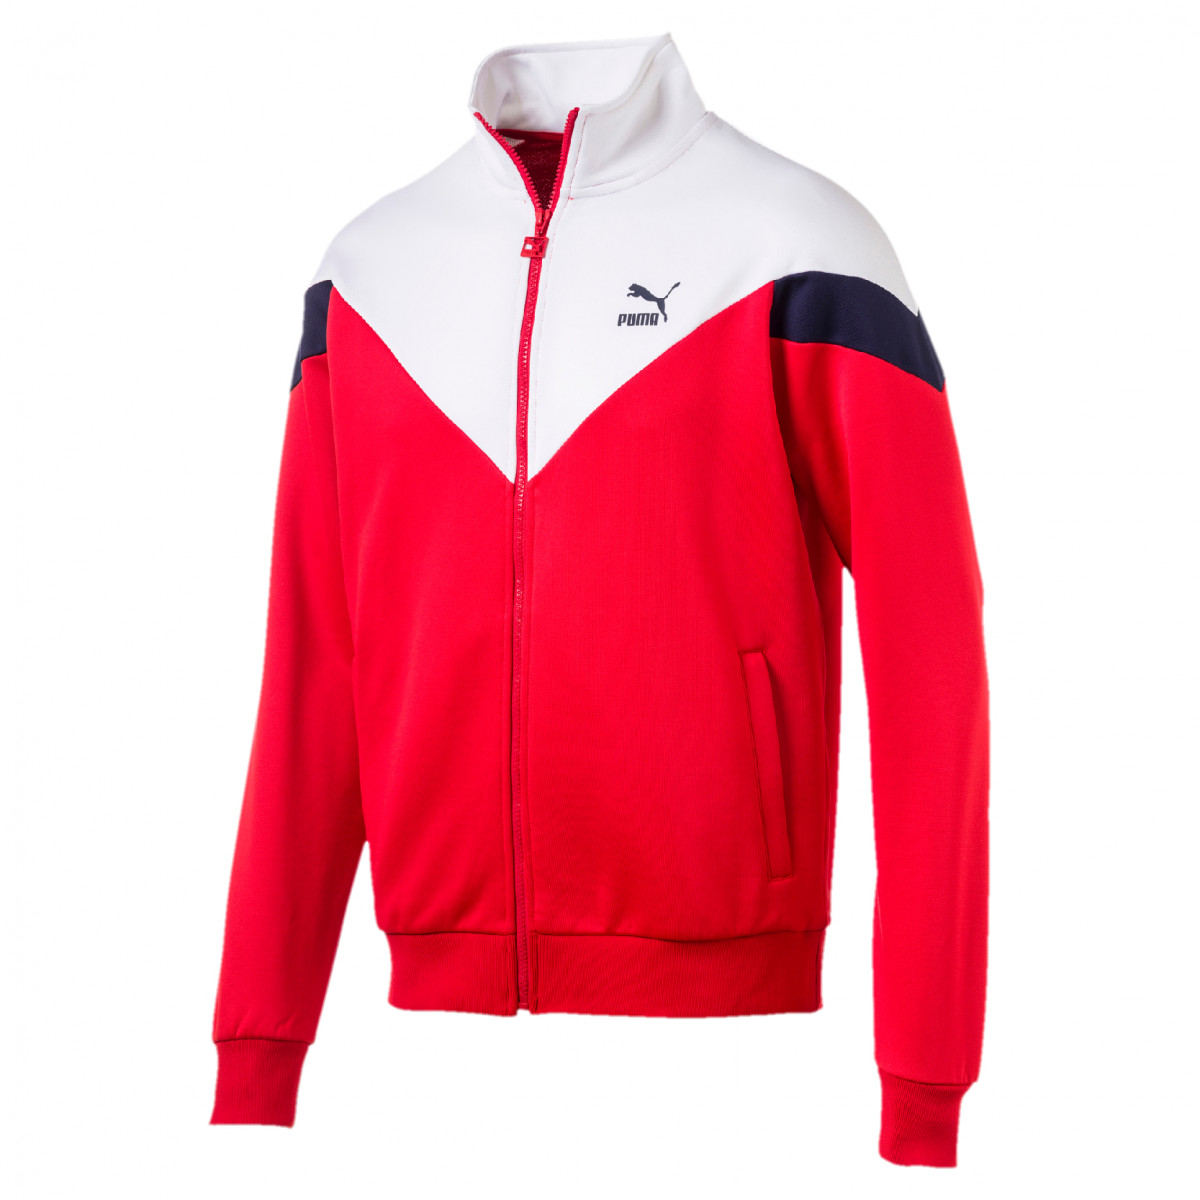 Áo khoác Puma đỏ phố trắng năng động từ thương hiệu Puma.